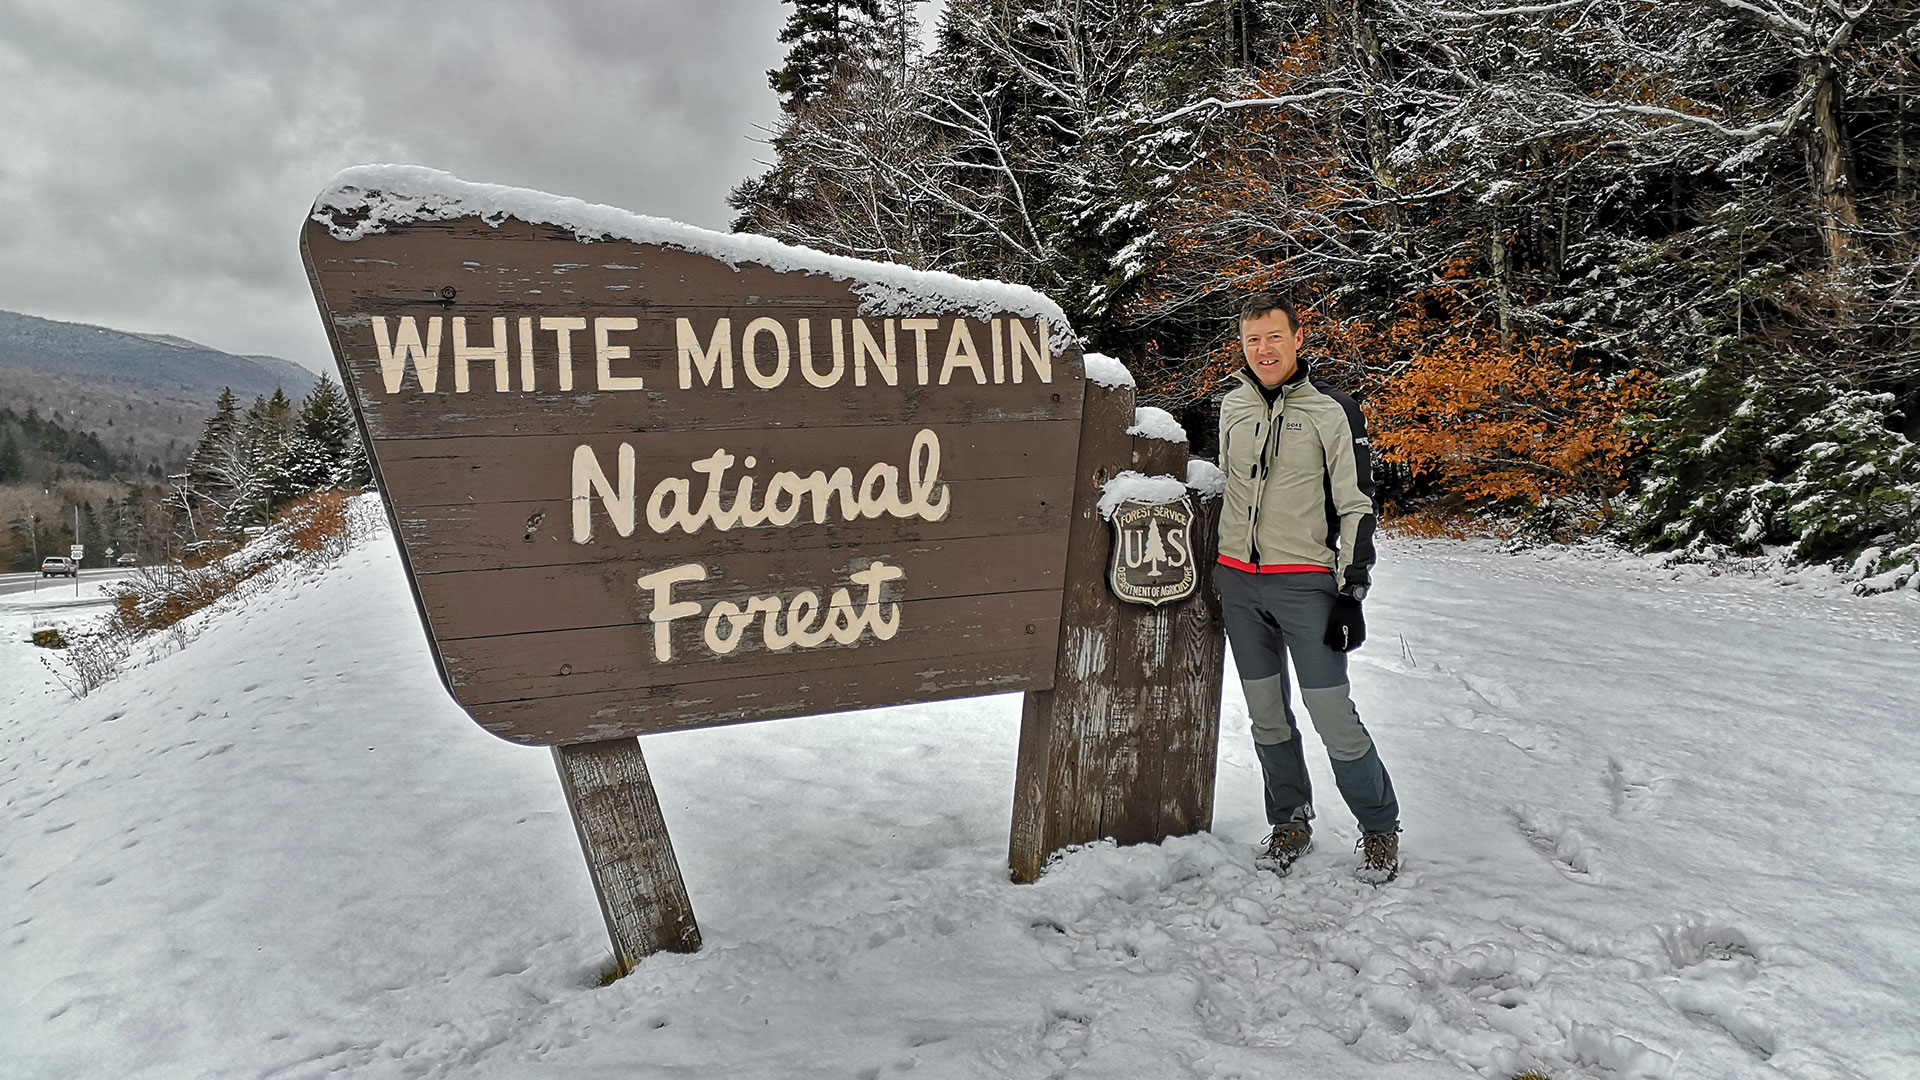 Mount Willard Trail Hiking–White Mountains-NH-USA